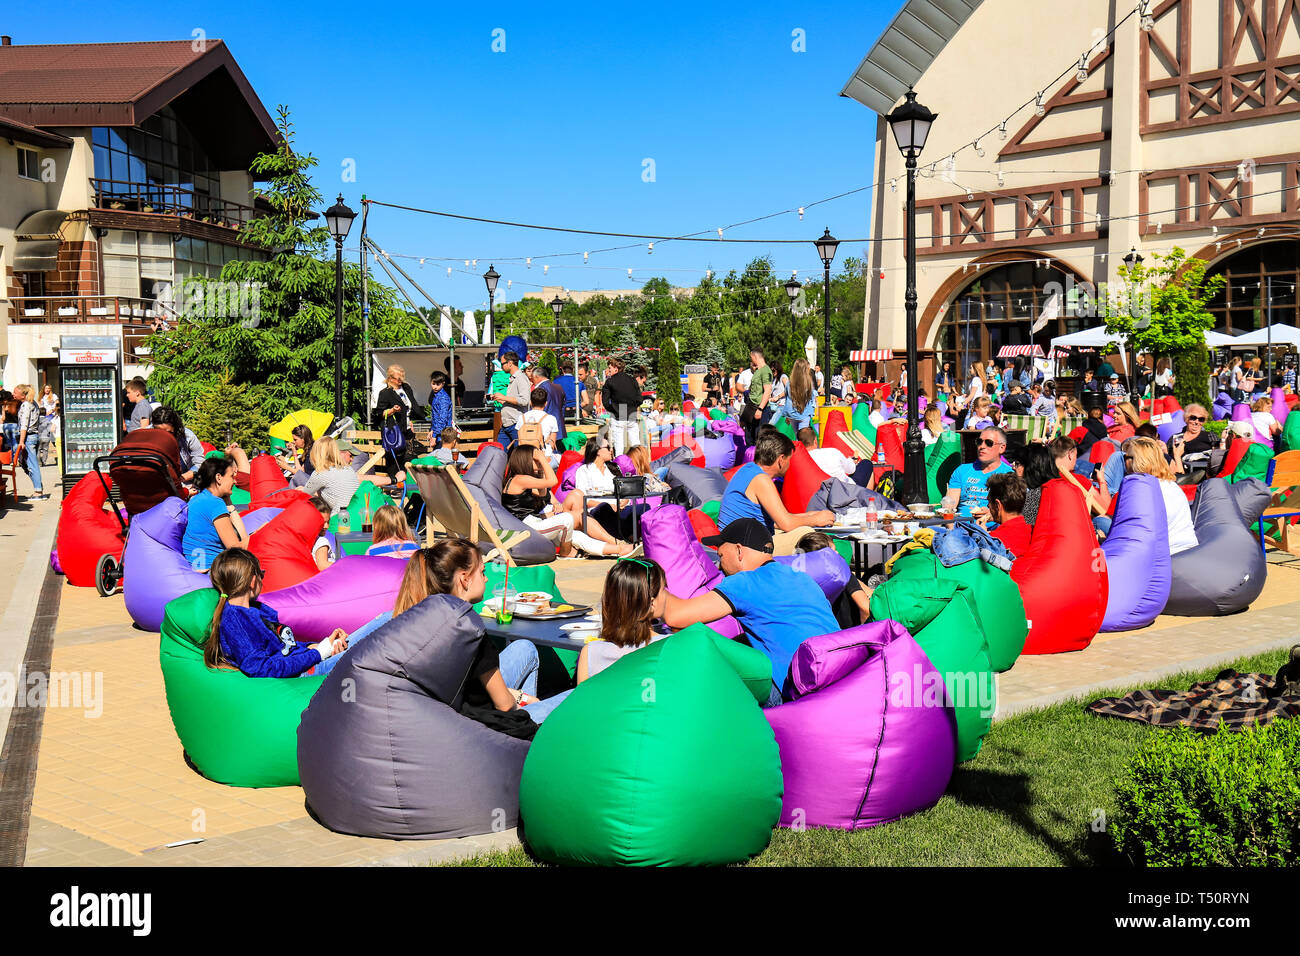 Dnepr ville, l'Ukraine. 28 mai, 2018. Les gens se reposer sur des chaises de couleurs pendant le festival de la nourriture au printemps, en été. Fauteuil sac. Dnepropetrovsk Banque D'Images